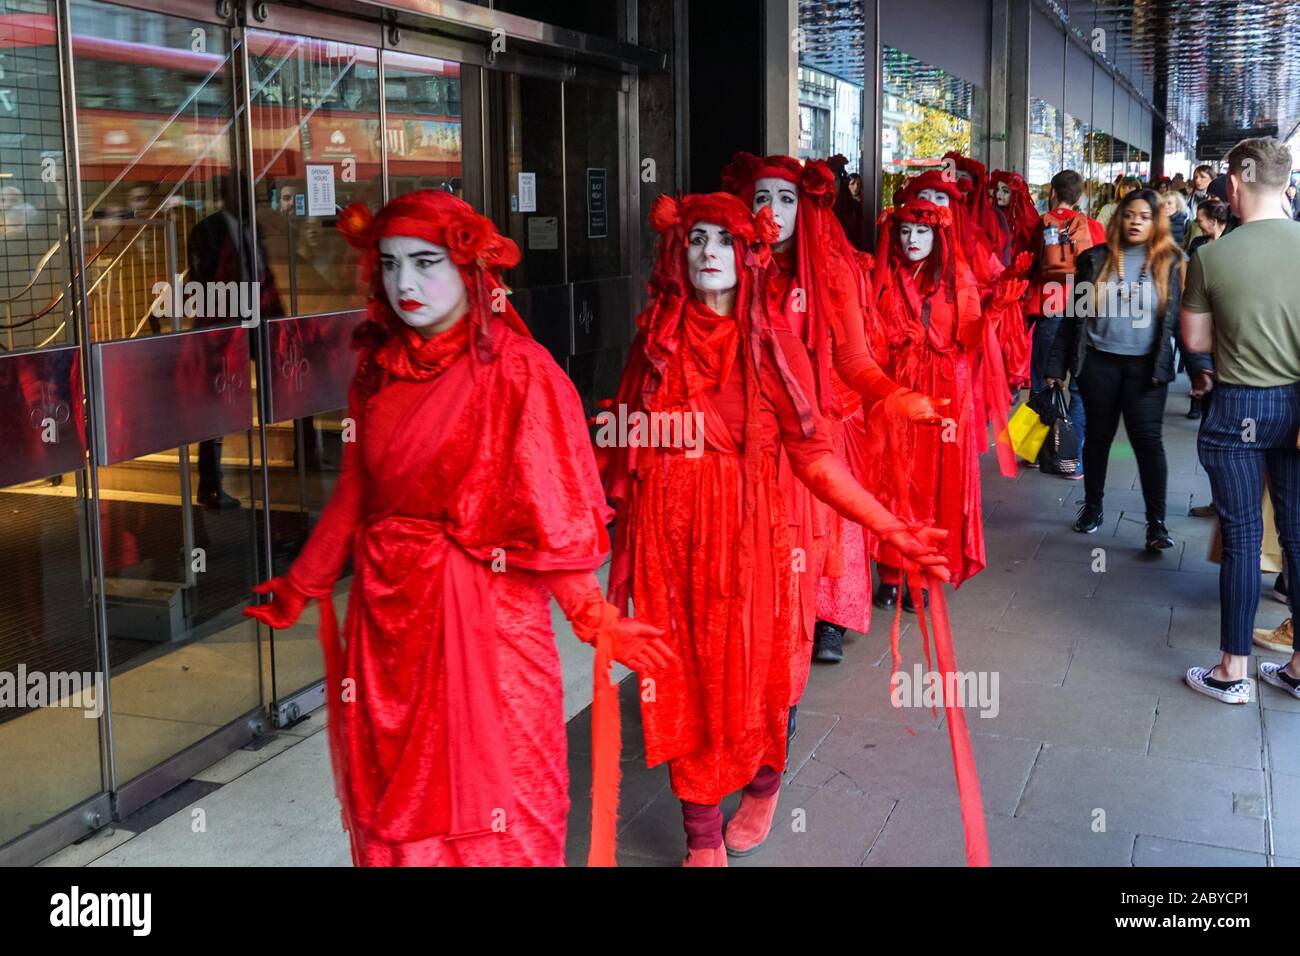 La Brigade rouge de la rébellion d'extinction protestant le Black Friday à Oxford Street à Londres, Angleterre, Royaume-Uni, Royaume-Uni Banque D'Images